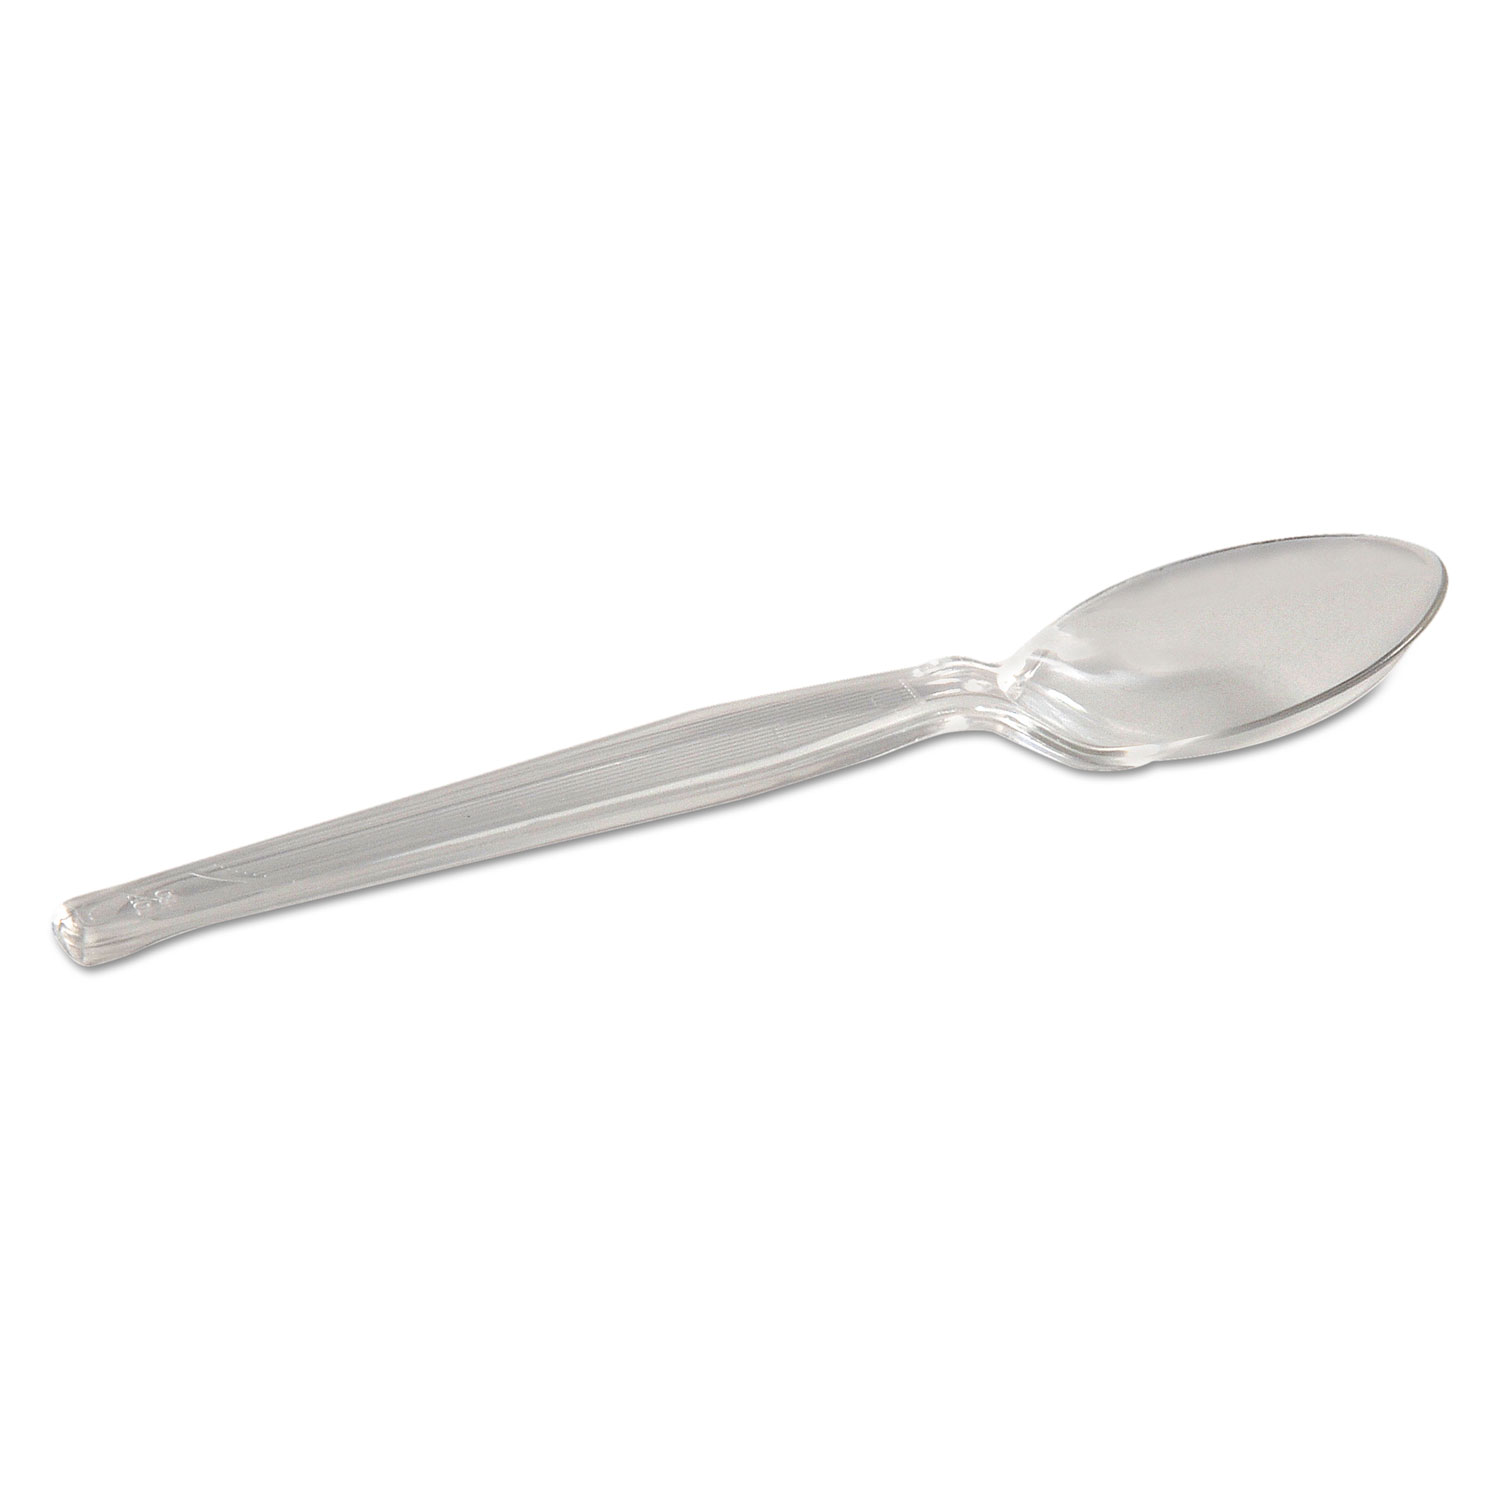  Dixie TH017 Plastic Cutlery, Heavyweight Teaspoon, Crystal Clear, 6, 1,000/Carton (DXETH017) 